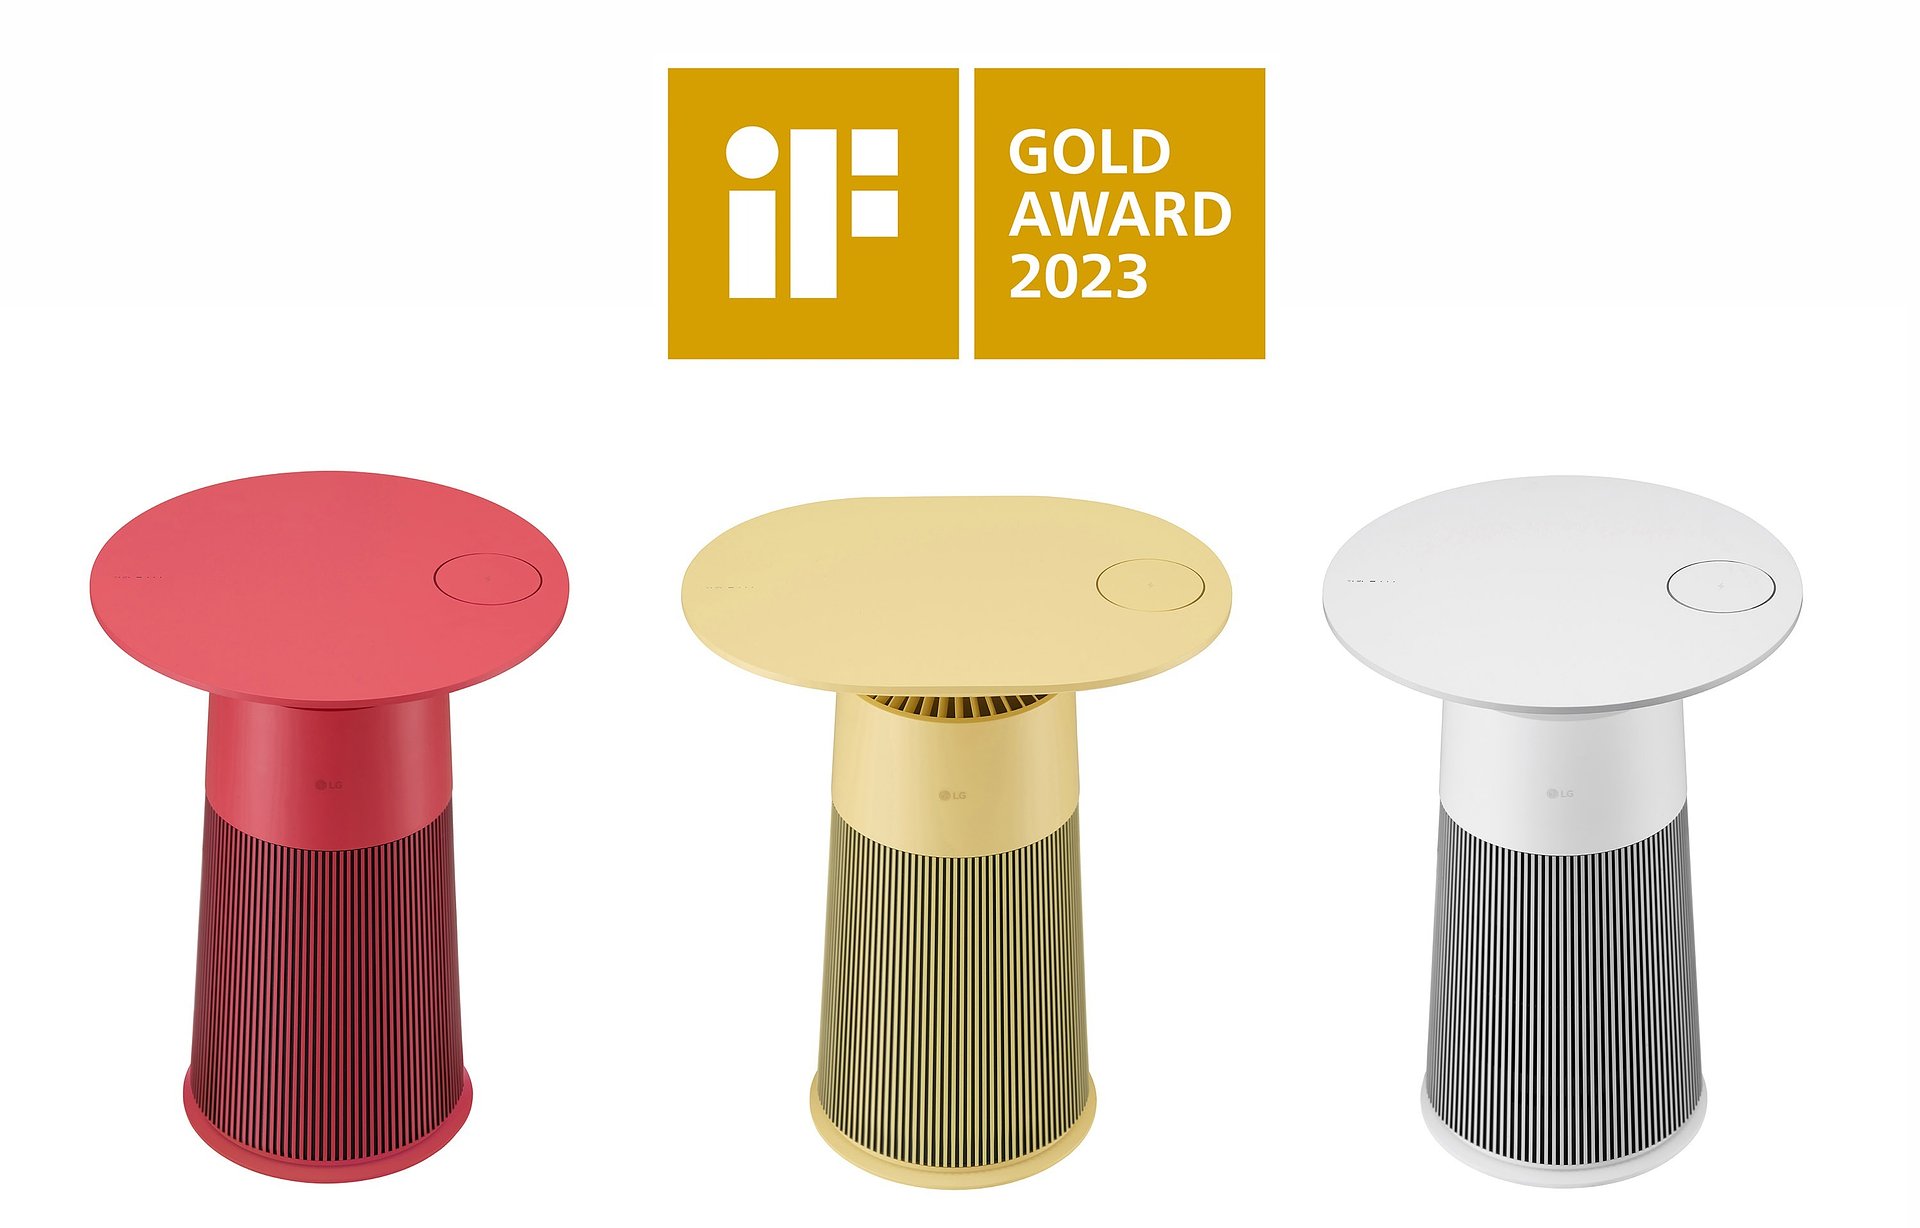 Firma LG Electronics ogłosiła, że w tegorocznej edycji konkursu iF Design Award otrzymała 23 wyróżnienia, w tym nagrodę iF Gold Award za wzornictwo produktowe unikatowej linii produktów LG PuriCare AeroFurniture.